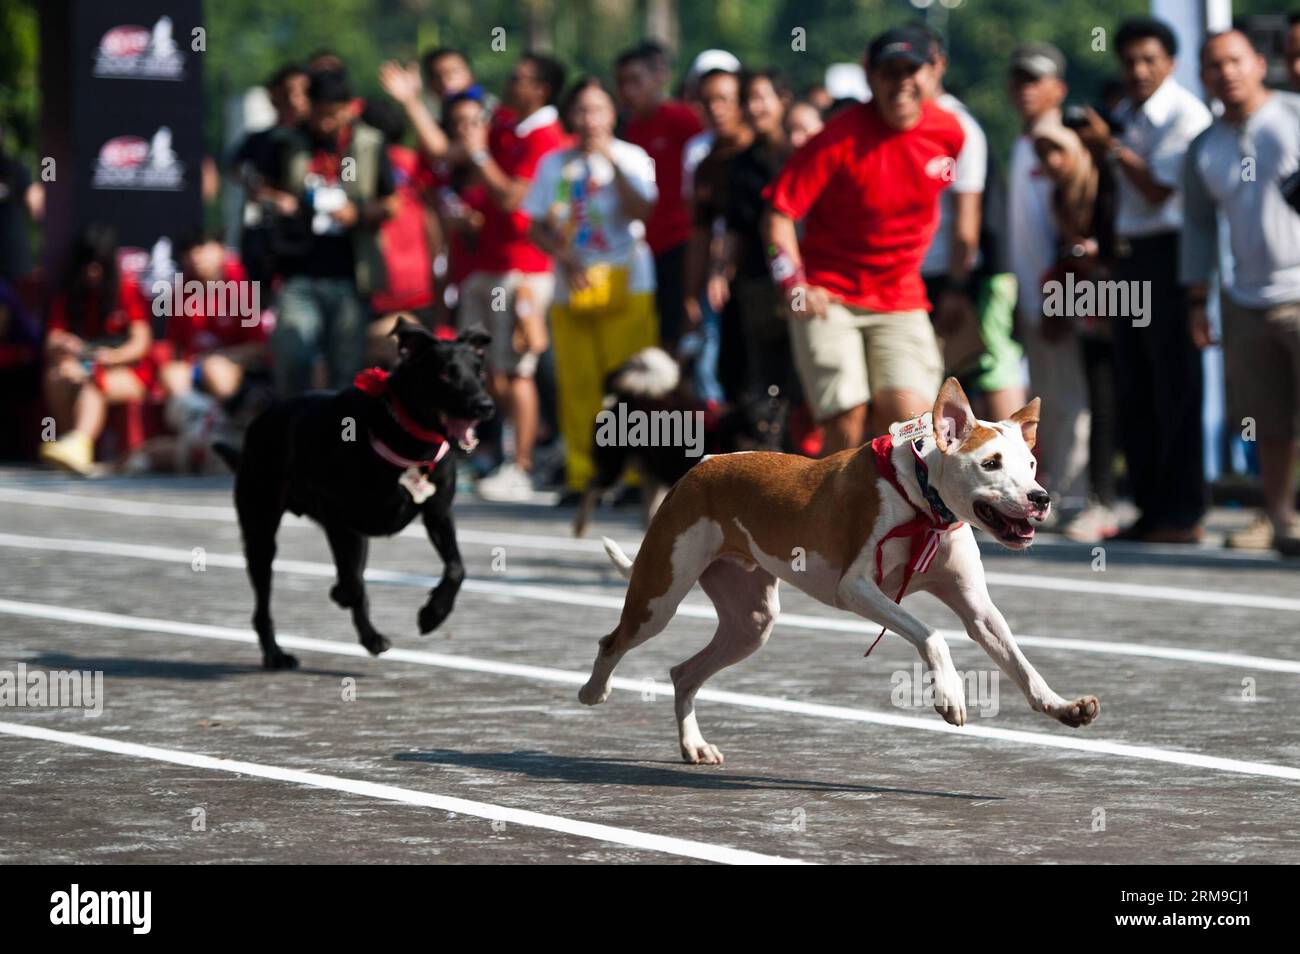 Hunde rennen in der Sprint-Kategorie beim Dog Run in Jakarta, Indonesien, 18. Mai 2014. Der Dog Run ist ein Rennen für Besitzer und ihre Hunde. (Xinhua/Veri Sanovri) INDONESIEN-JAKARTA-HUNDESPORT PUBLICATIONxNOTxINxCHN HUNDESCHLITTENRENNEN in der Sprint-Kategorie während des Hundeschlittenlaufs in Jakarta, Indonesien, 18. Mai 2014 das Hundeschlittenrennen IST ein Rennen für Besitzer und ihre Hunde XINHUA Veri Indonesia Jakarta Hundeslauf PUBLICATIONxNOTxINxCHN Stockfoto